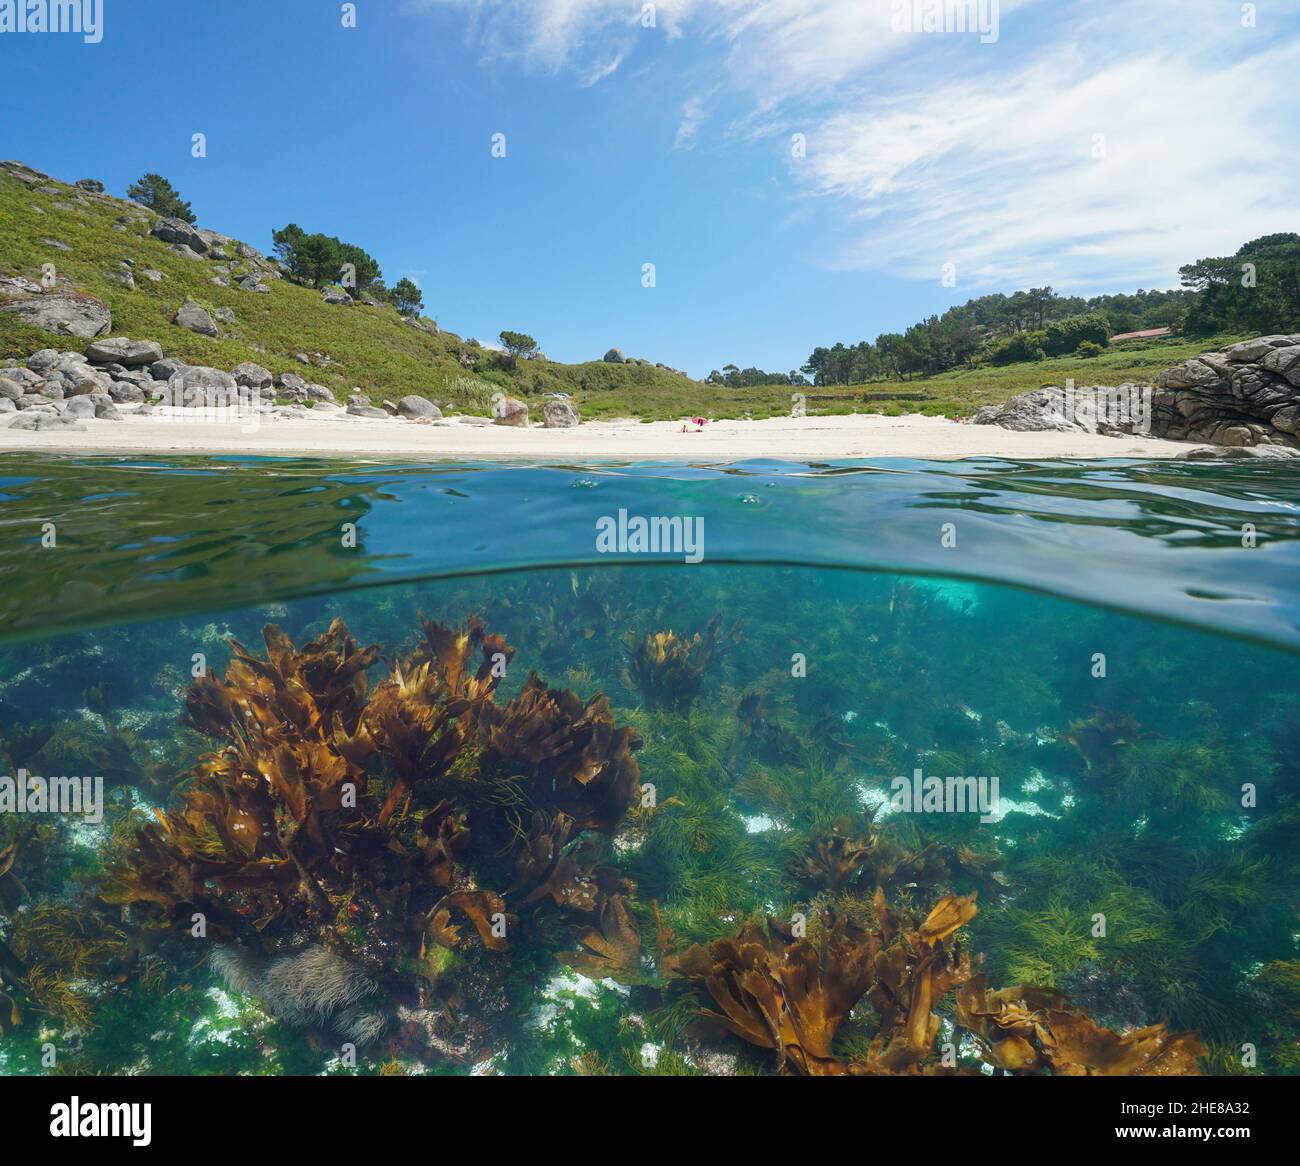 Plage littoral et algues sous l'eau dans l'océan, vue sur et sous la surface de l'eau, Espagne, Galice, Atlantique est, Pontevedra Banque D'Images